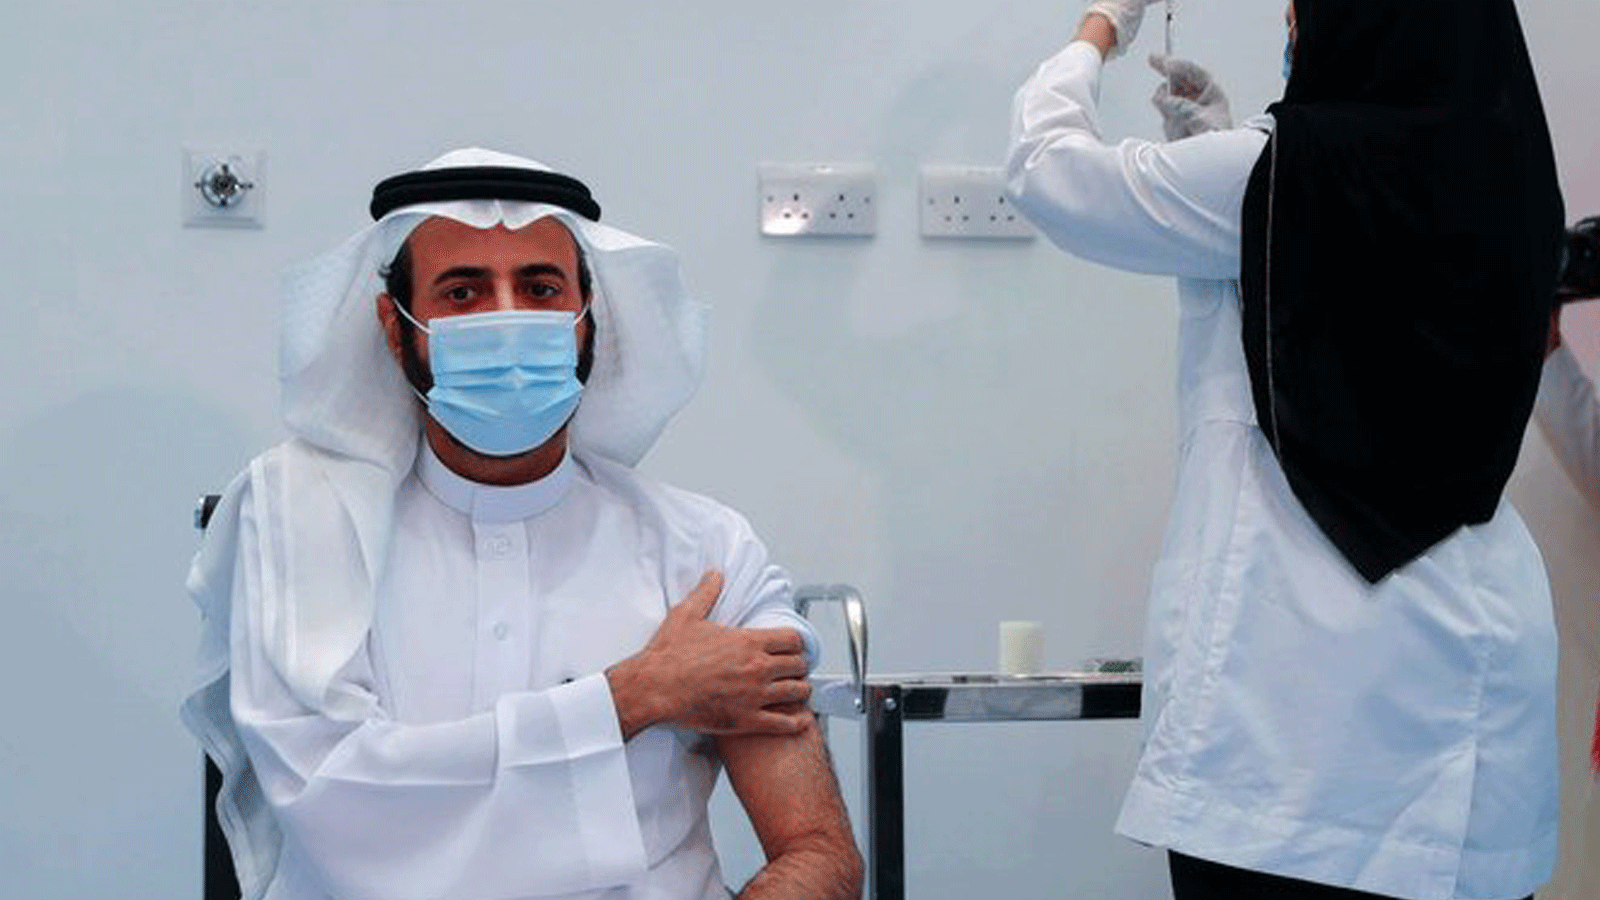 وزير الصحة السعودي توفيق الربيعة يتلقى جرعته الثانية من لقاح فيروس كورونا COVID-19 في الرياض بتاريخ 7 كانون الثاني/يناير 2021.